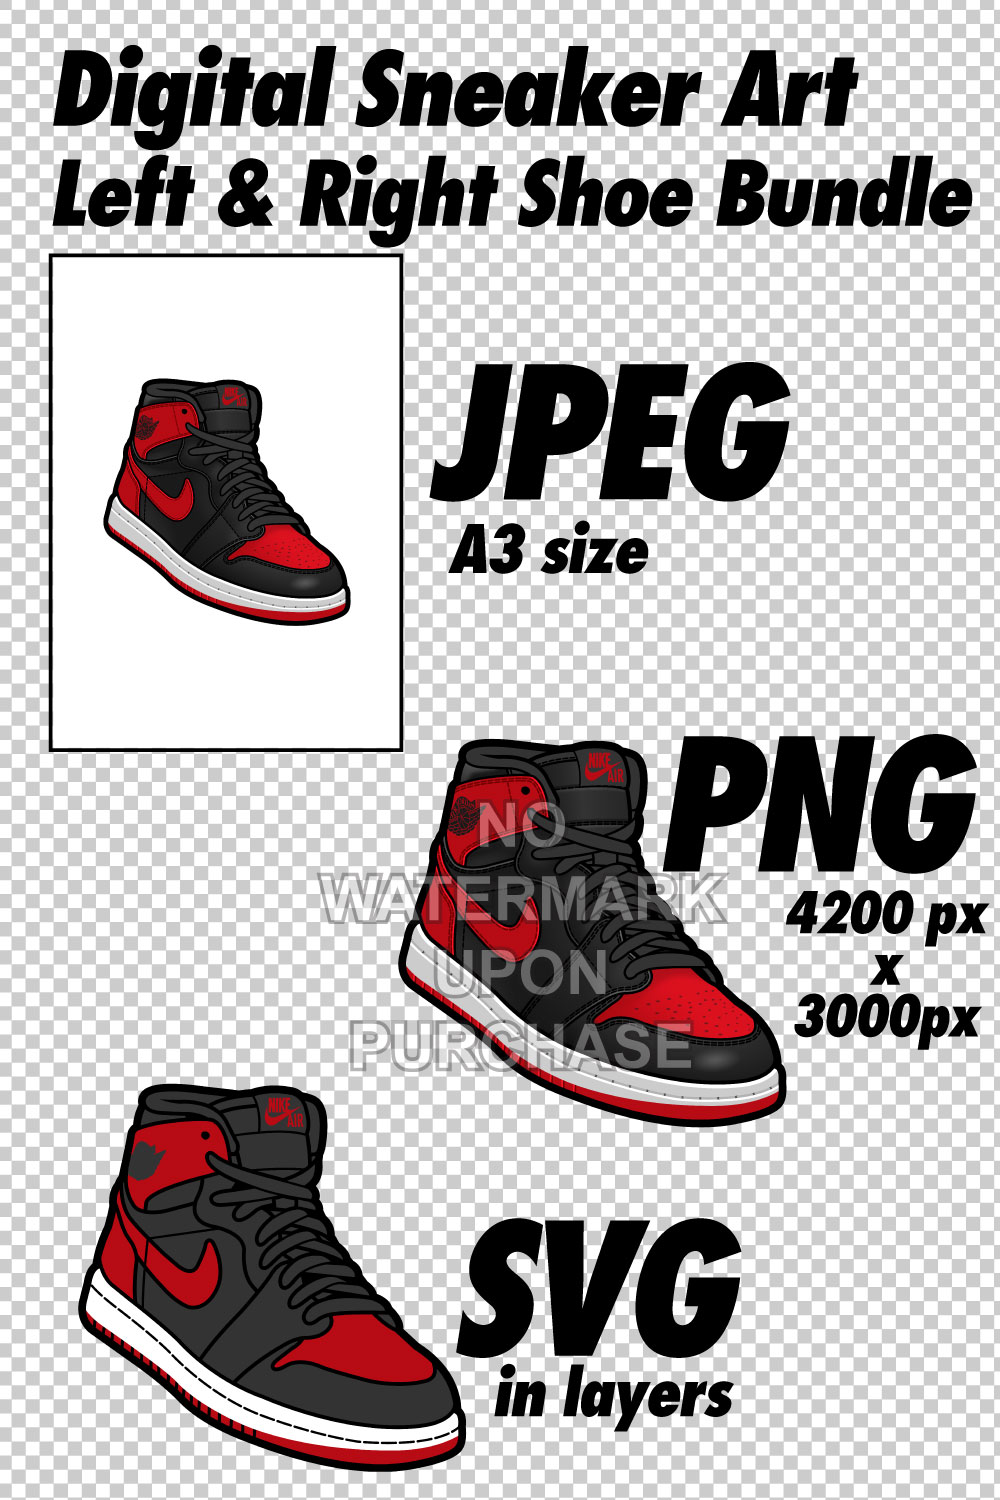 Air Jordan 1 Banned JPEG PNG SVG right & left shoe bundle Sneaker Art Digital Download pinterest preview image.